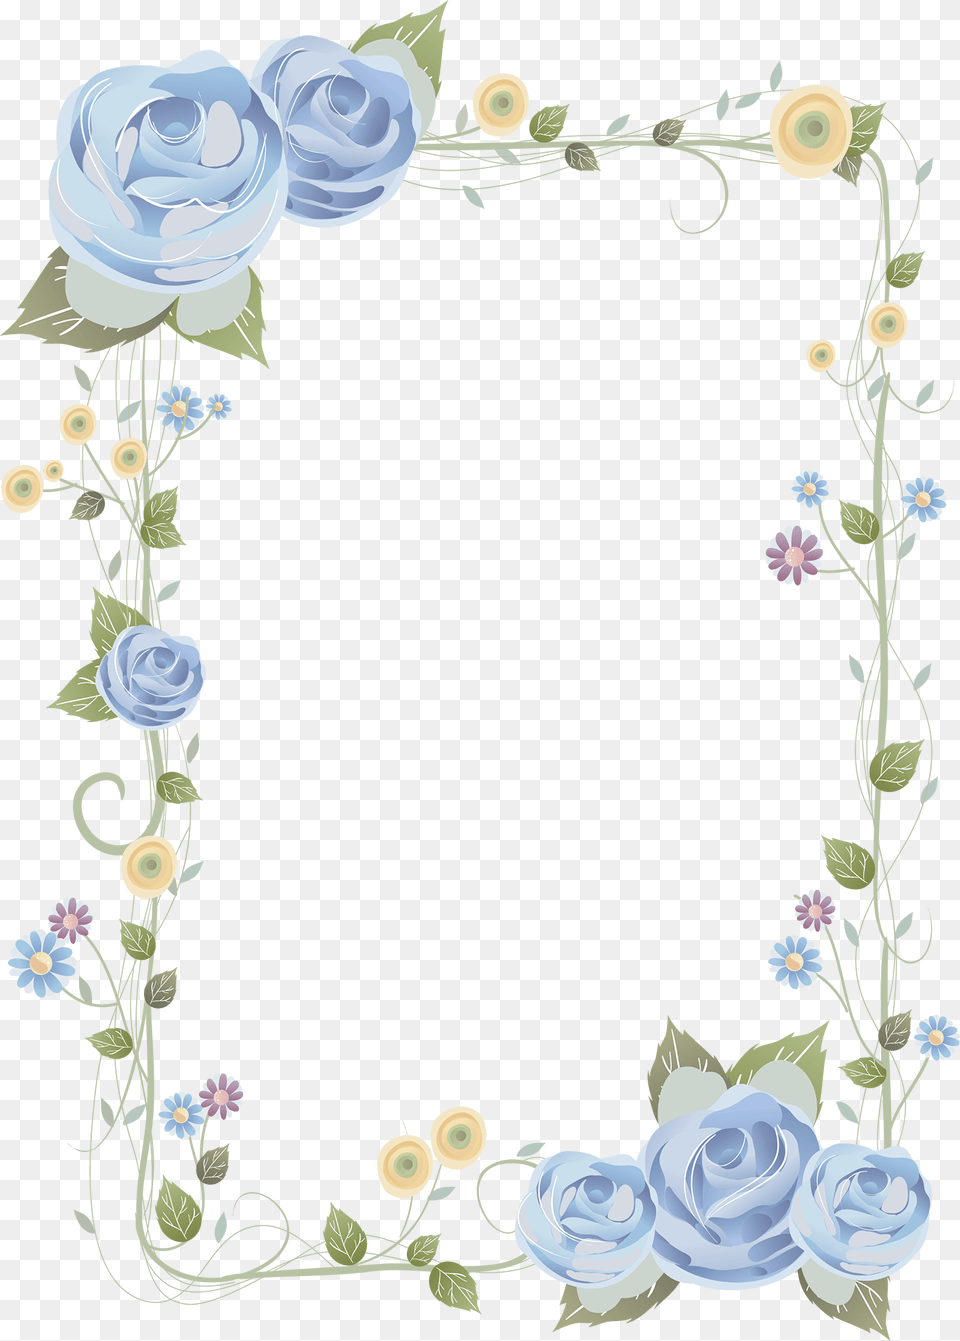 Rose Frame Clipart Flower Design Paper Drawing, Art, Floral Design, Graphics, Pattern Free Transparent Png